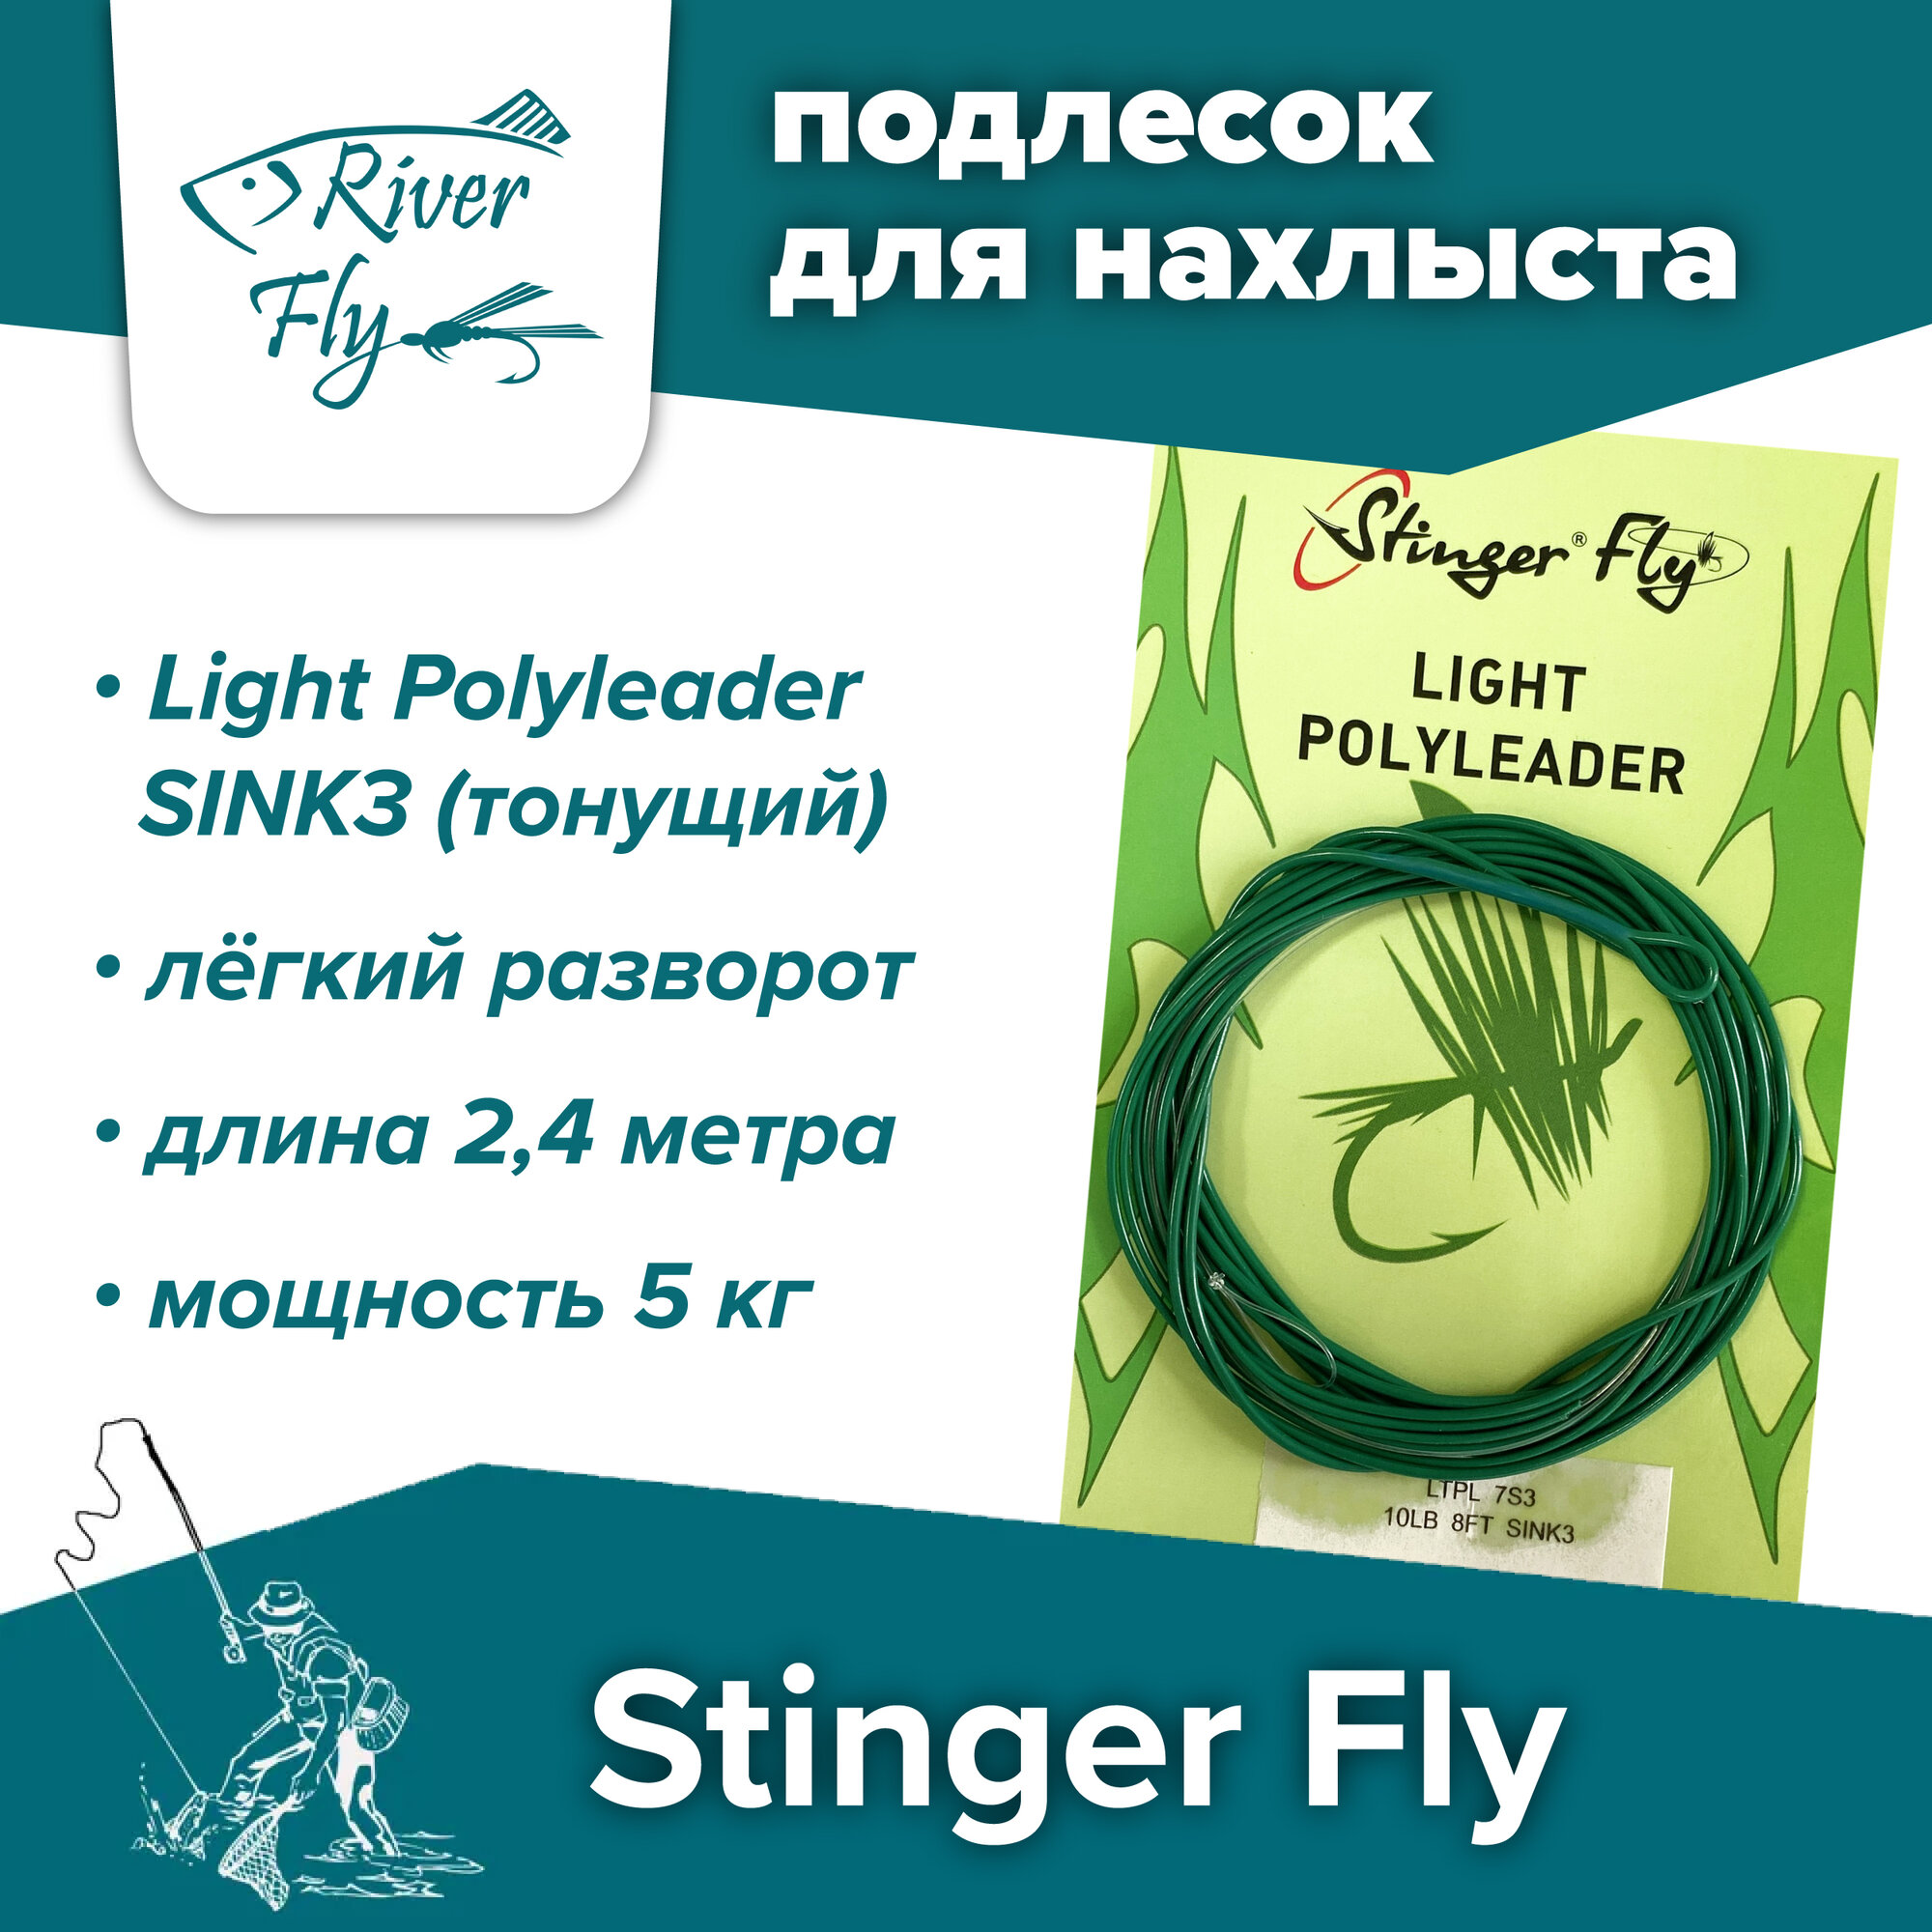 Подлесок для нахлыста конусный Stinger Fly 10LB 8FT SINK3 (5 кг / 2,4 м) тонущий Light Polyleader